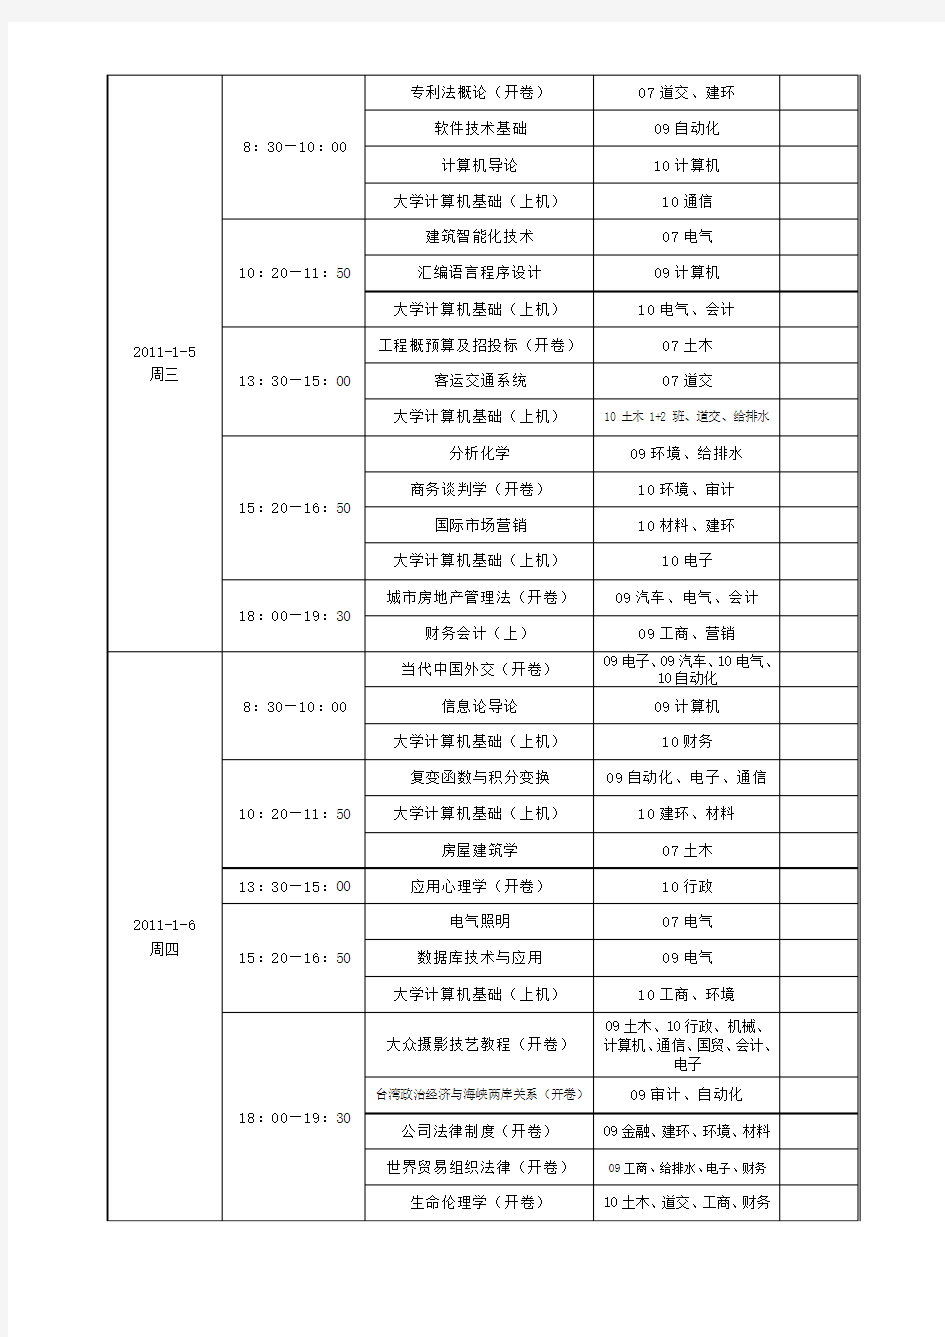 同济大学浙江学院关于2010-2011学年第一学期期末考试安排的通知